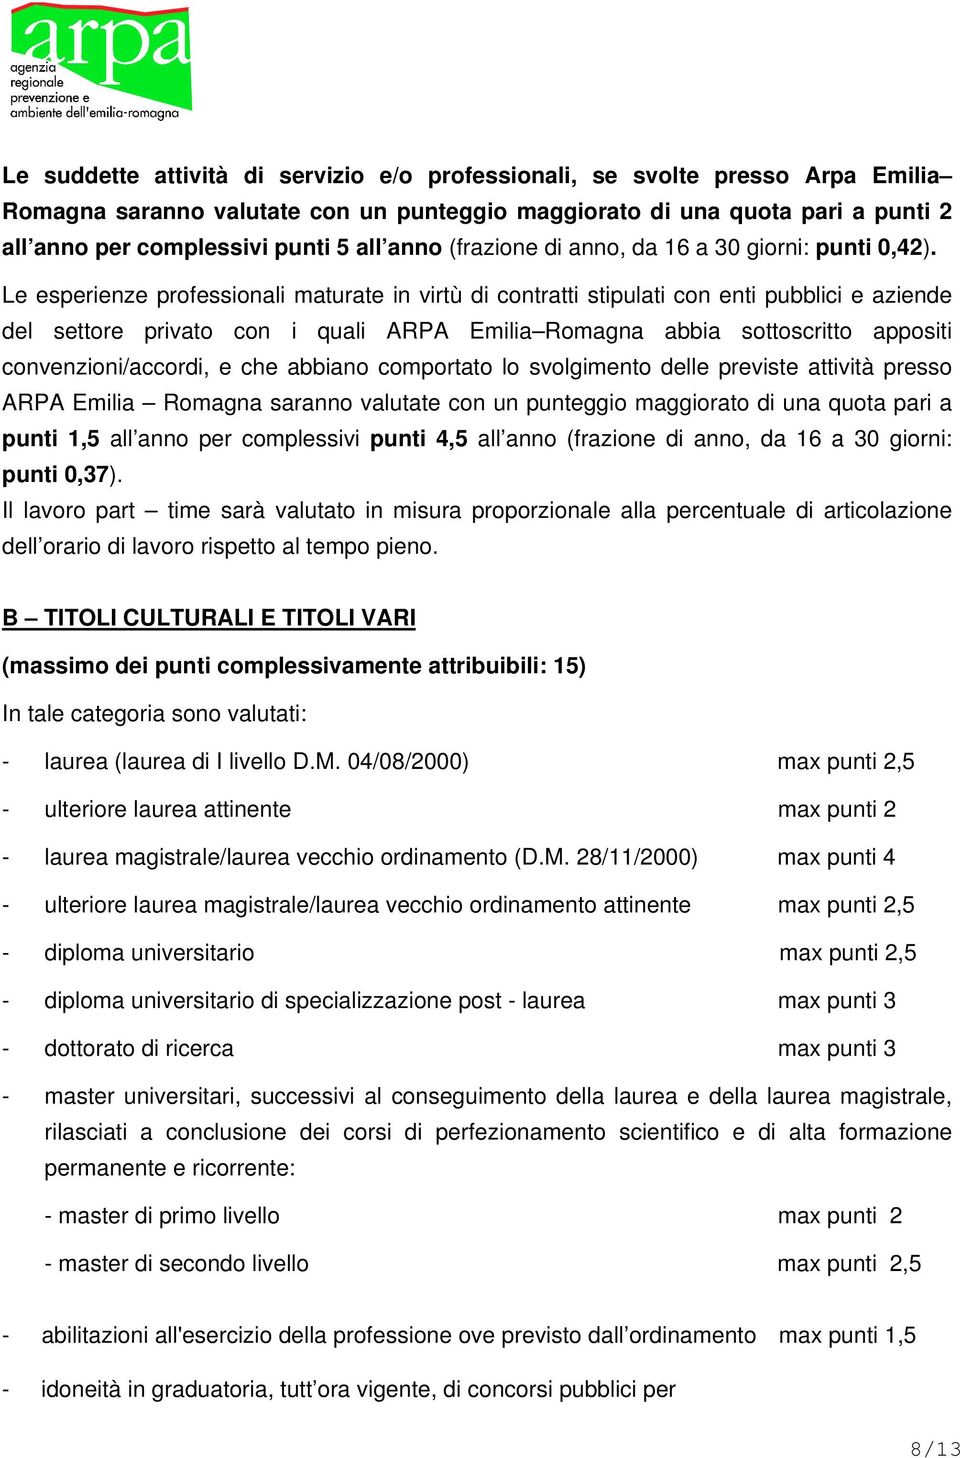 Le esperienze professionali maturate in virtù di contratti stipulati con enti pubblici e aziende del settore privato con i quali ARPA Emilia Romagna abbia sottoscritto appositi convenzioni/accordi, e